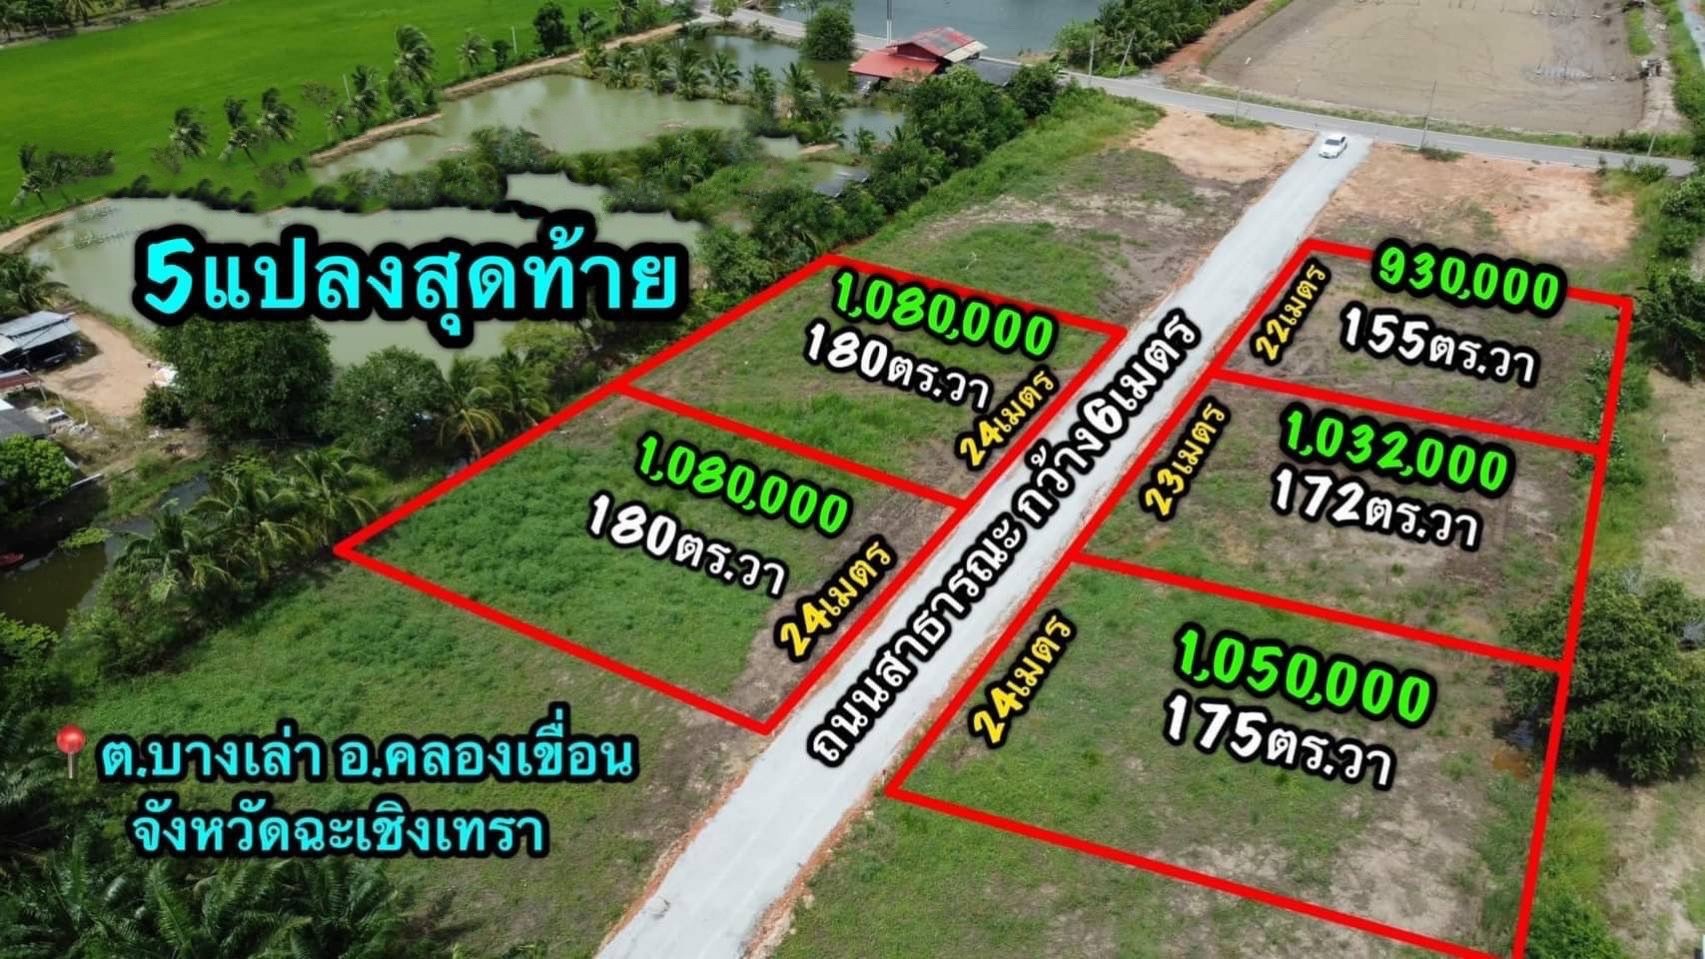 急售！出售 5 块土地，总面积 2 莱 62 平方哇，位于北柳府Bang Lao区，每块地块都有公共道路穿过，靠近曼谷，无水灾，适合建造花园洋房， 在大自然中 新鲜空气